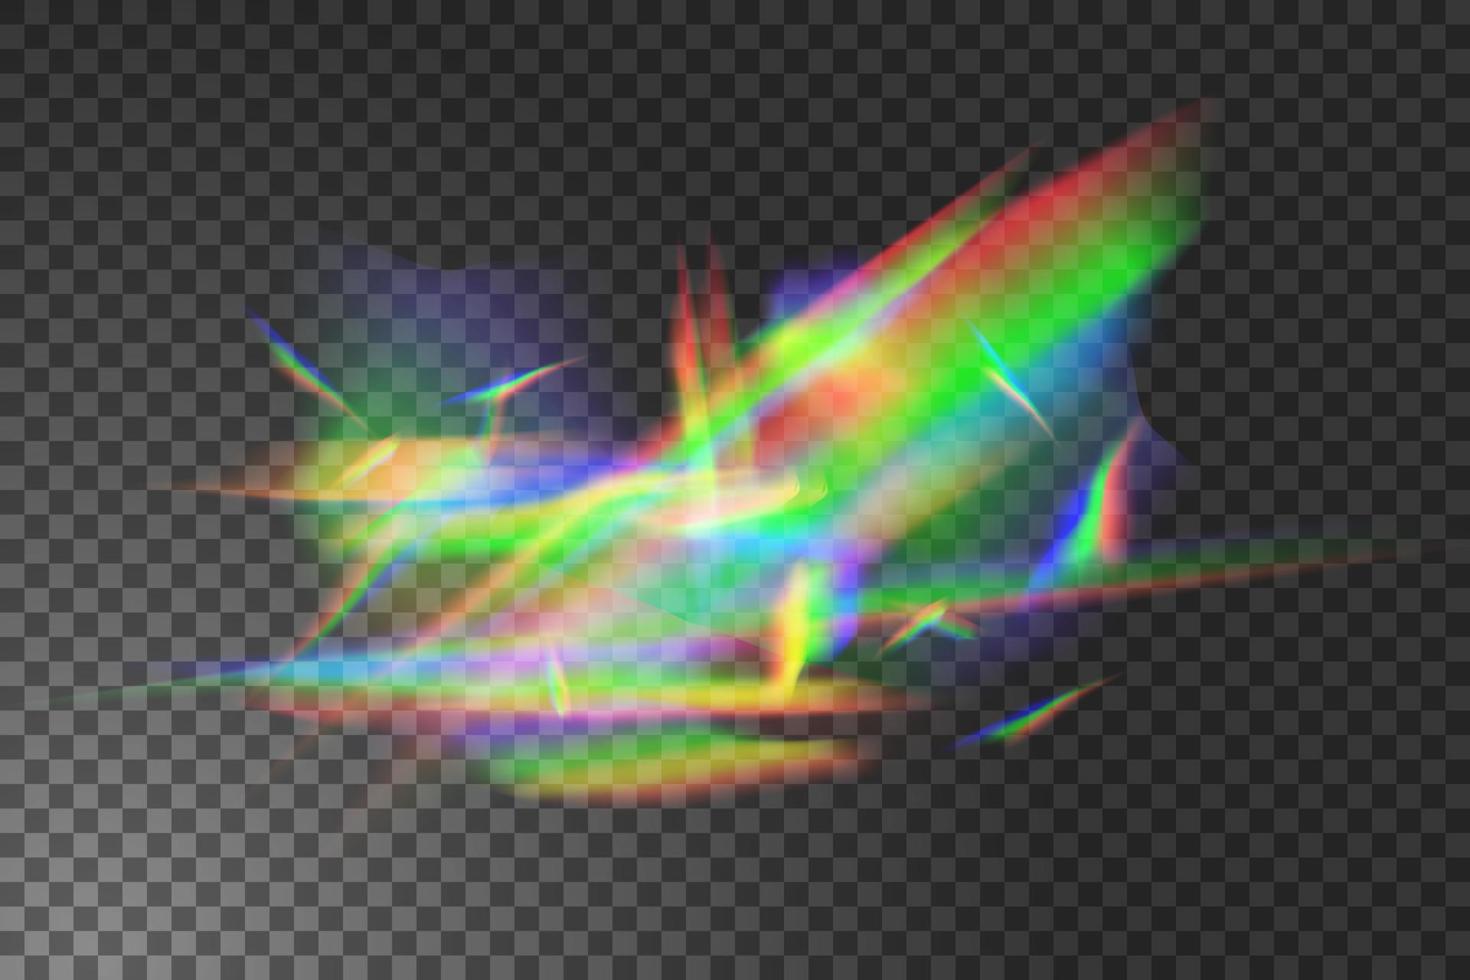 cristal e joia, prisma, brilho. arco Iris brilhando brilhos vetor set.realistic diamante reflexão, arco Iris luz ótico efeito colorida coleção, brilhante espectro brilho raios.